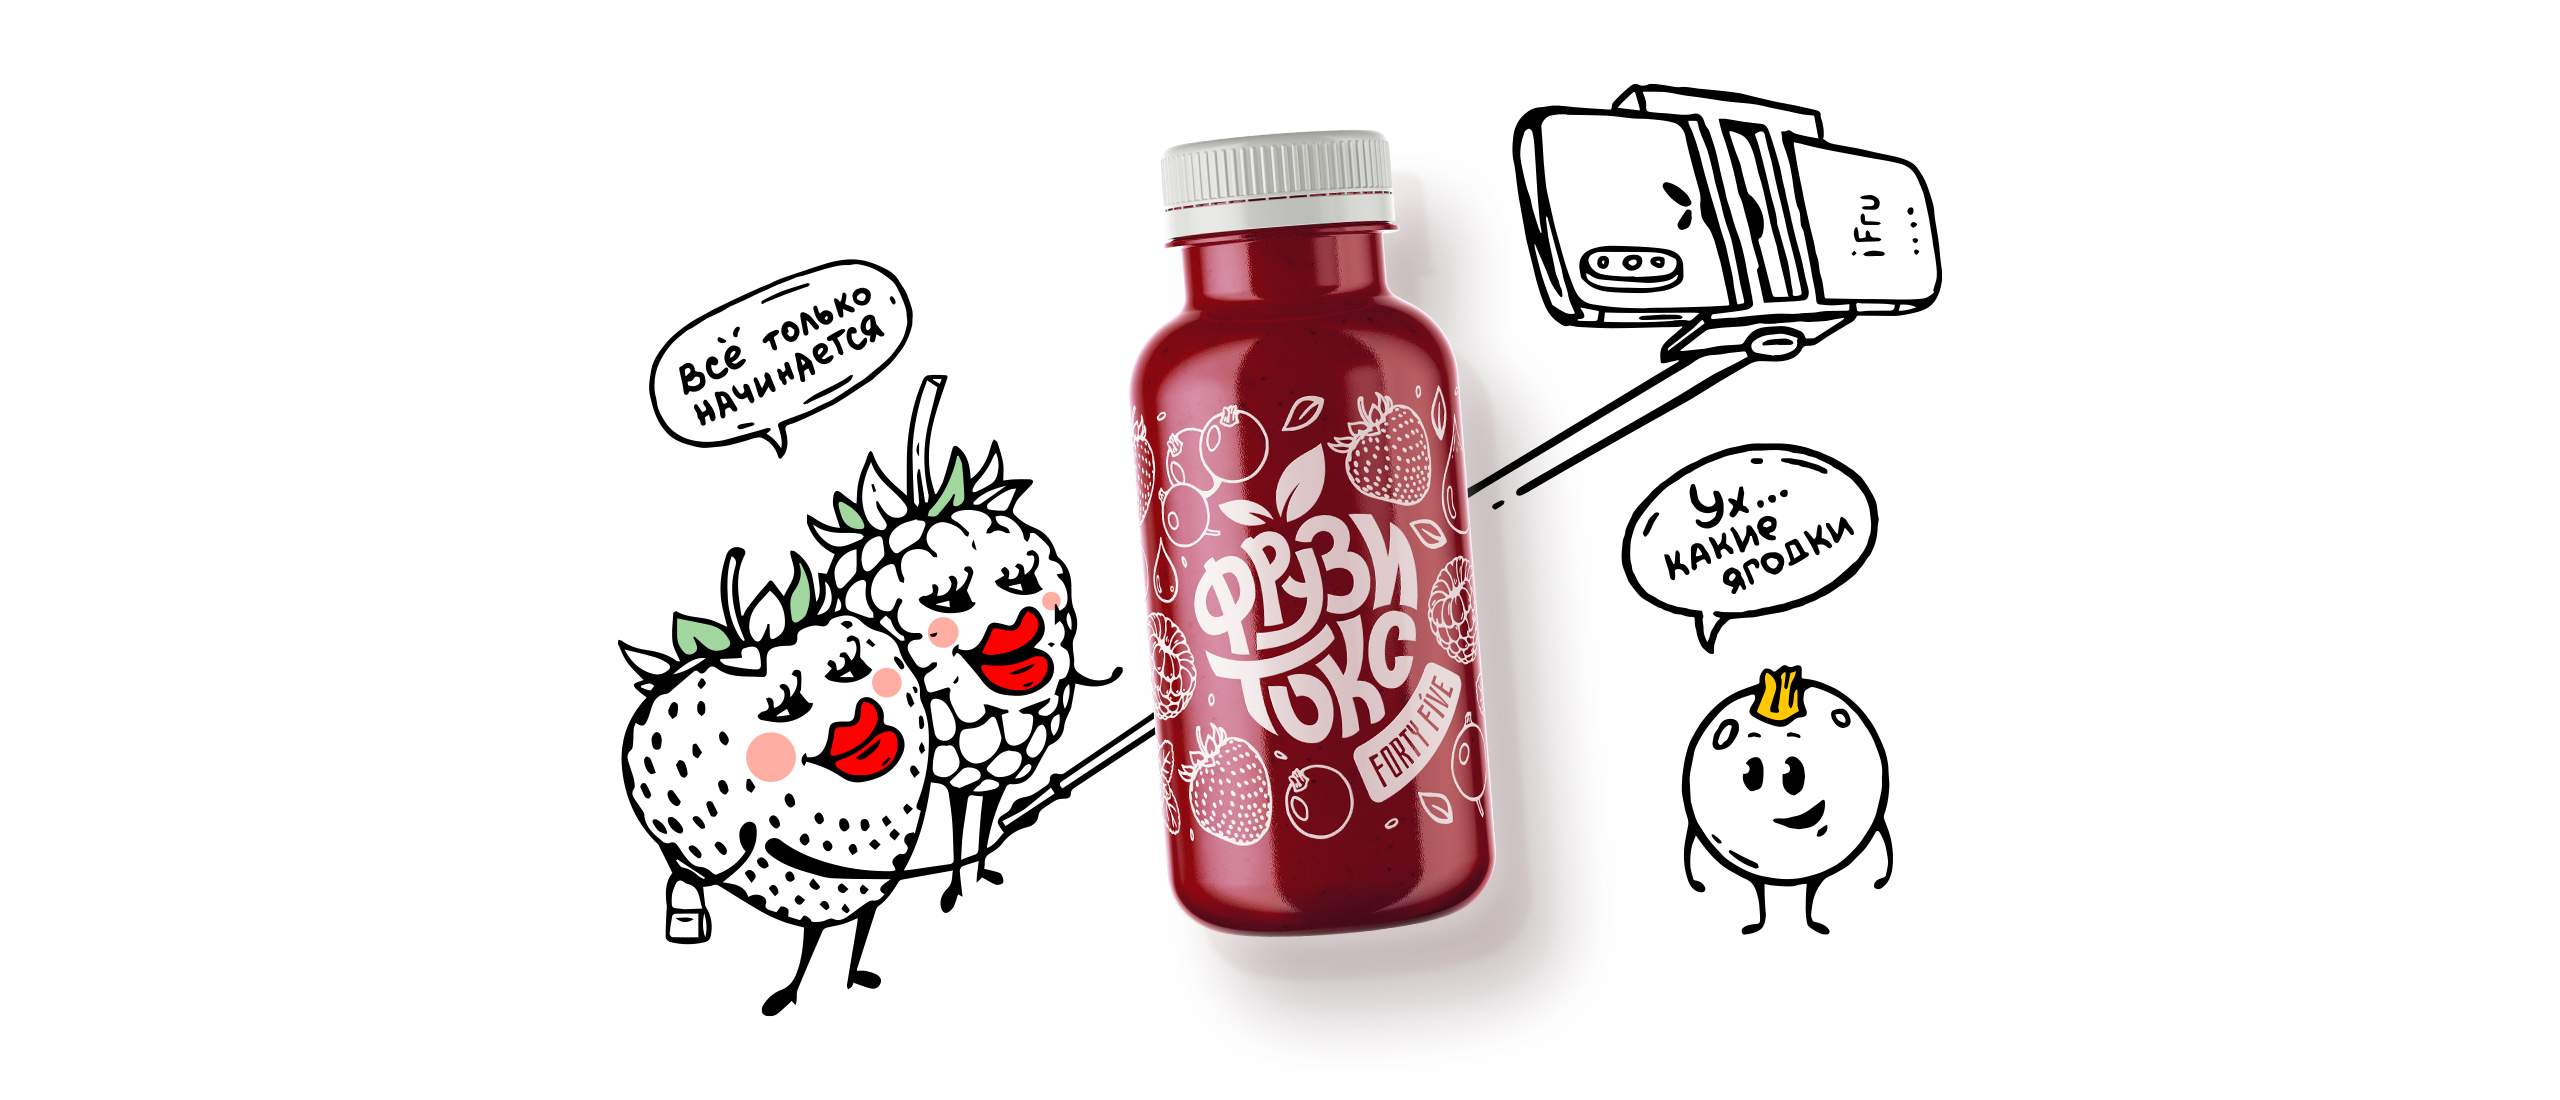 Smoothie Fruzitox果汁品牌和包装设计